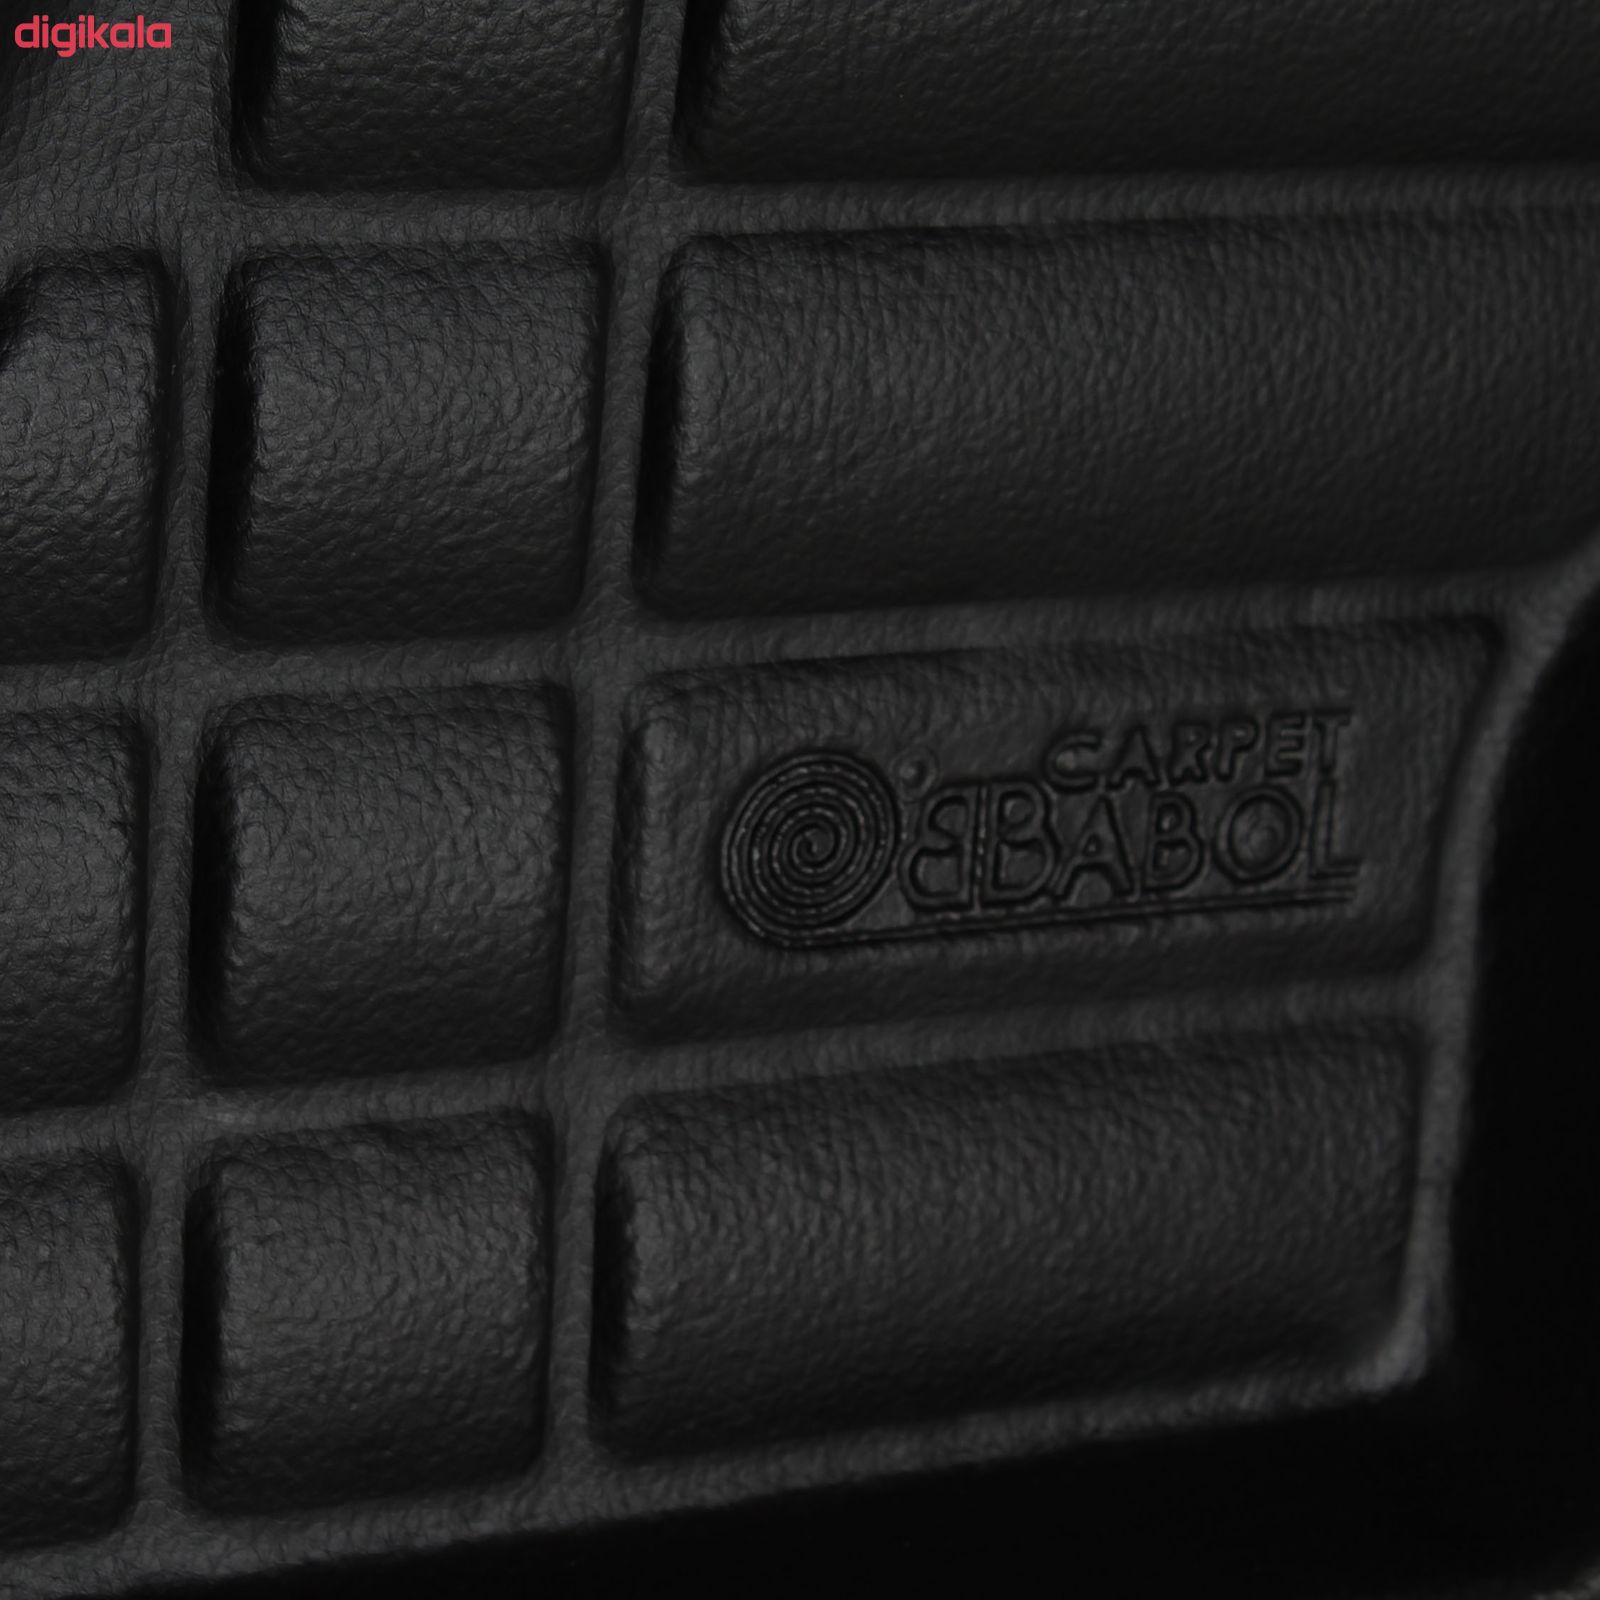  خرید اینترنتی با تخفیف ویژه کف پوش سه بعدی صندوق خودرو بابل مدل CH30155 مناسب برای تیبا